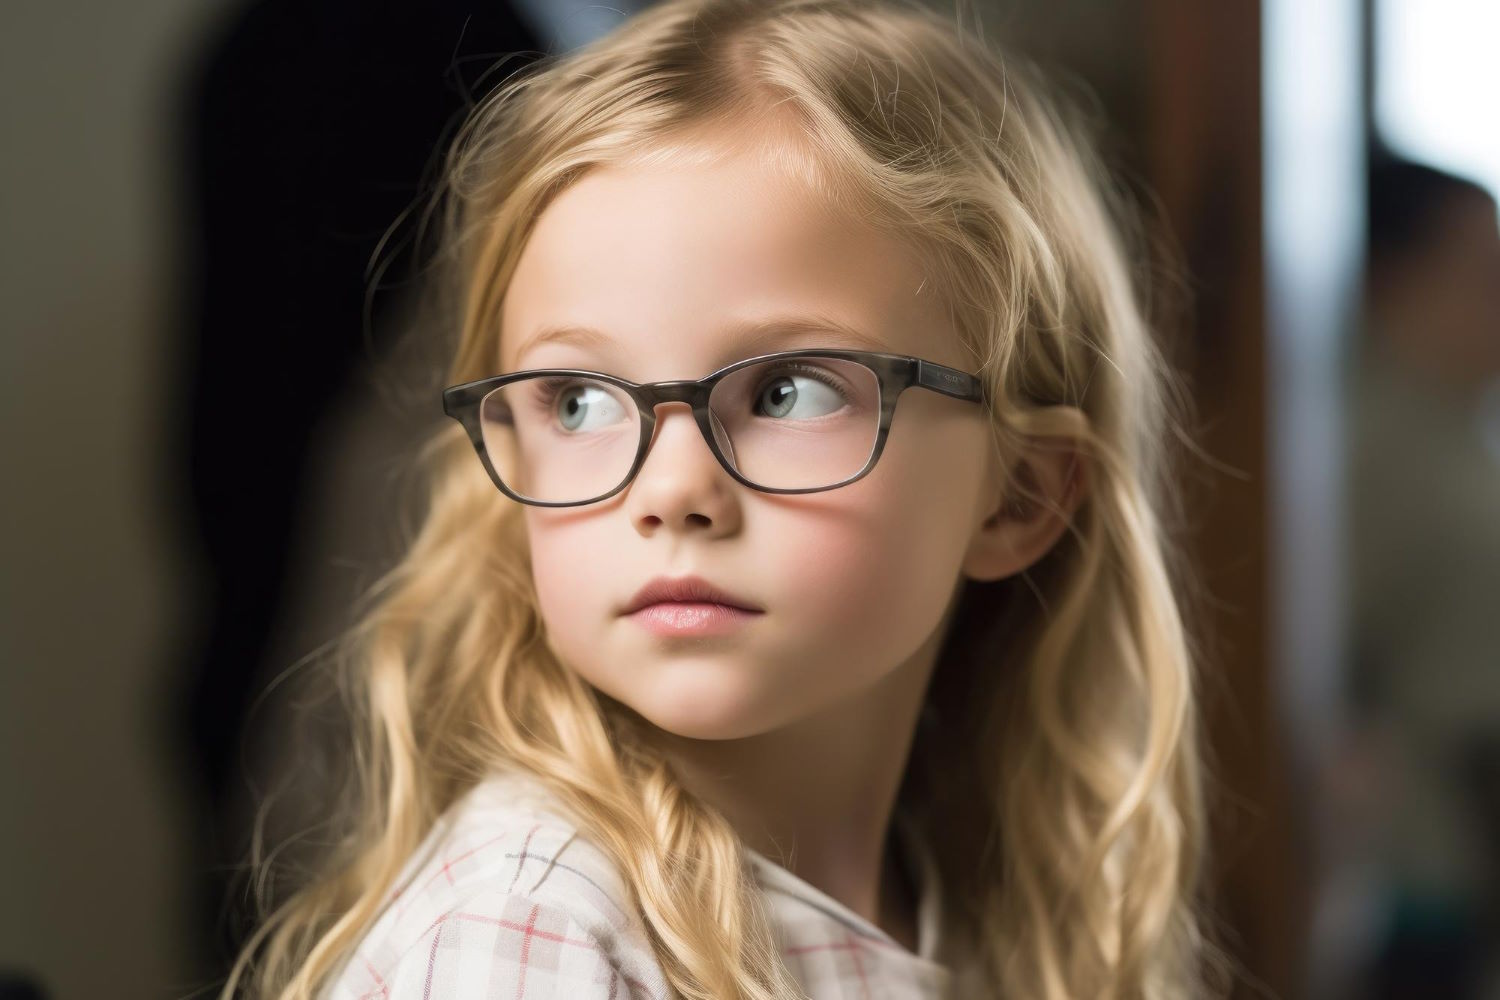 Wybór odpowiednich okularów korekcyjnych dla dziecka może być trudny, ale istnieje kilka czynników, które warto wziąć pod uwagę